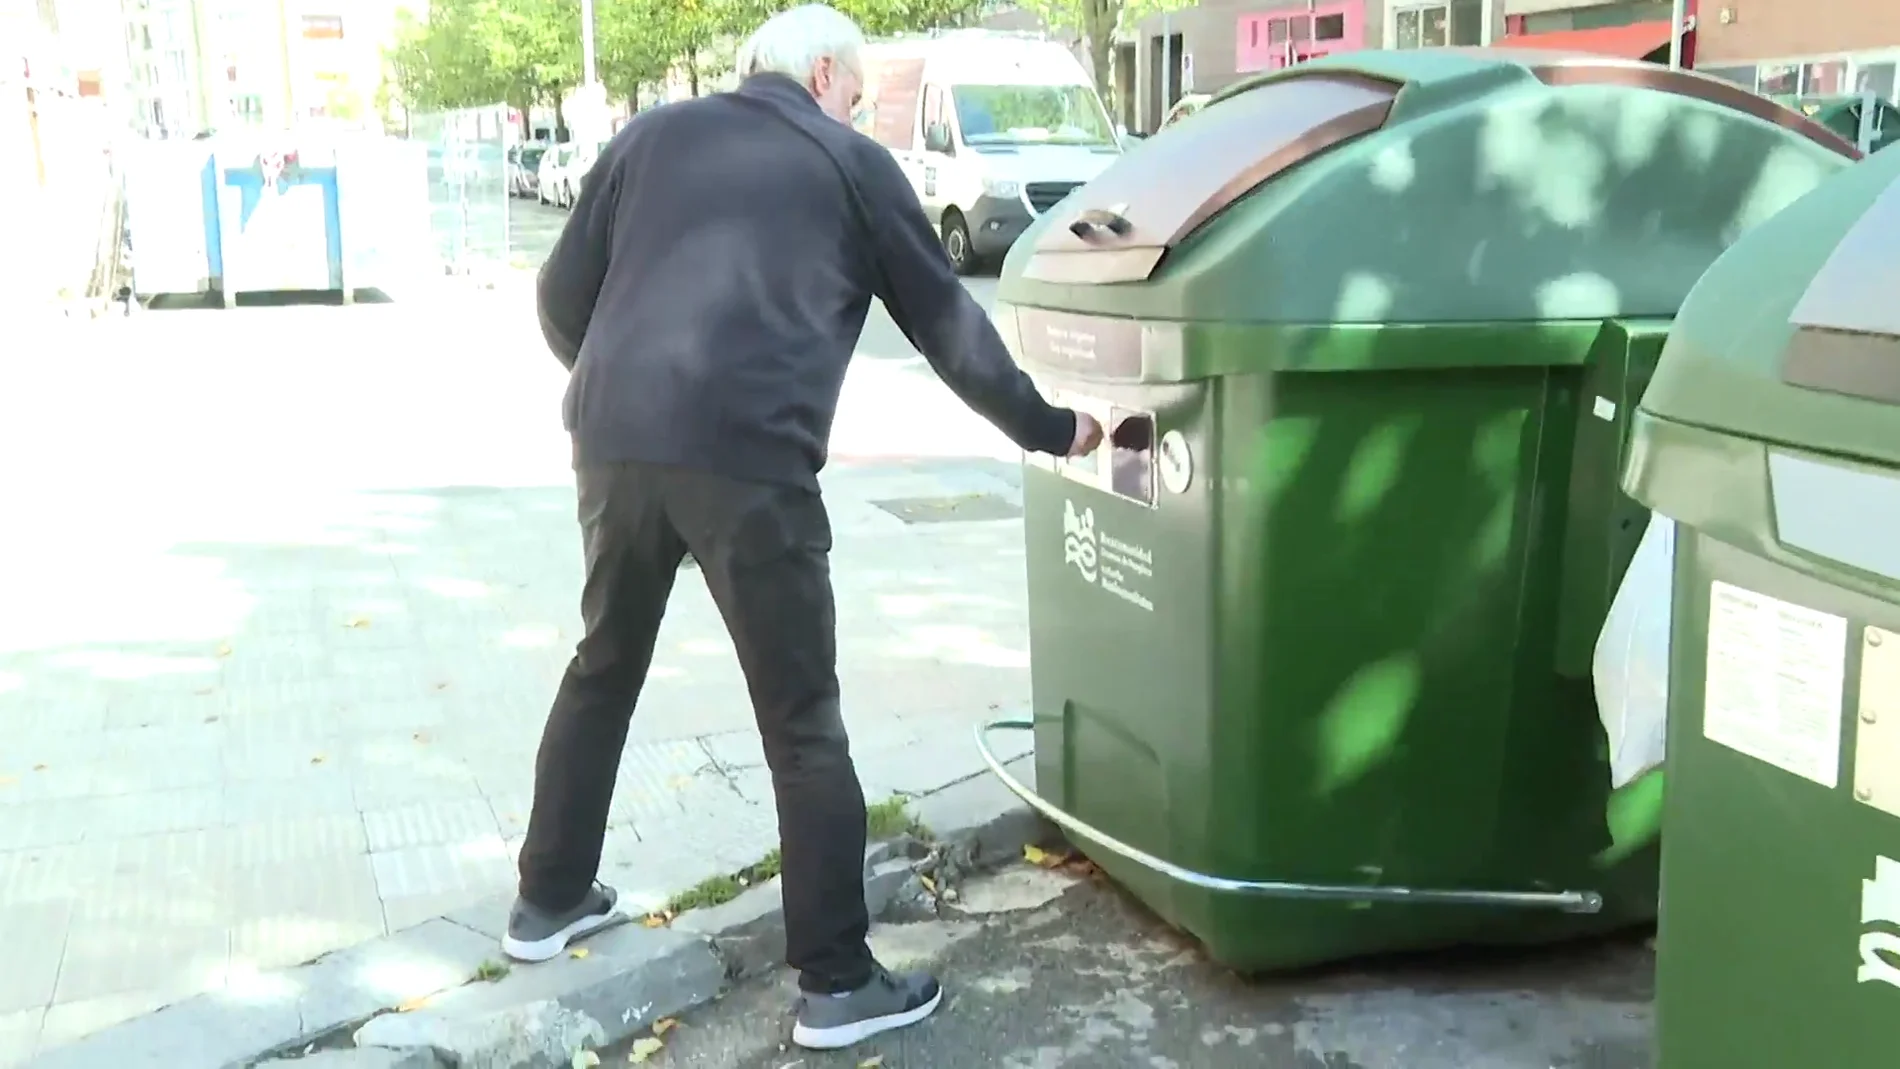 Foto de archivo de un hombre tirando la basura